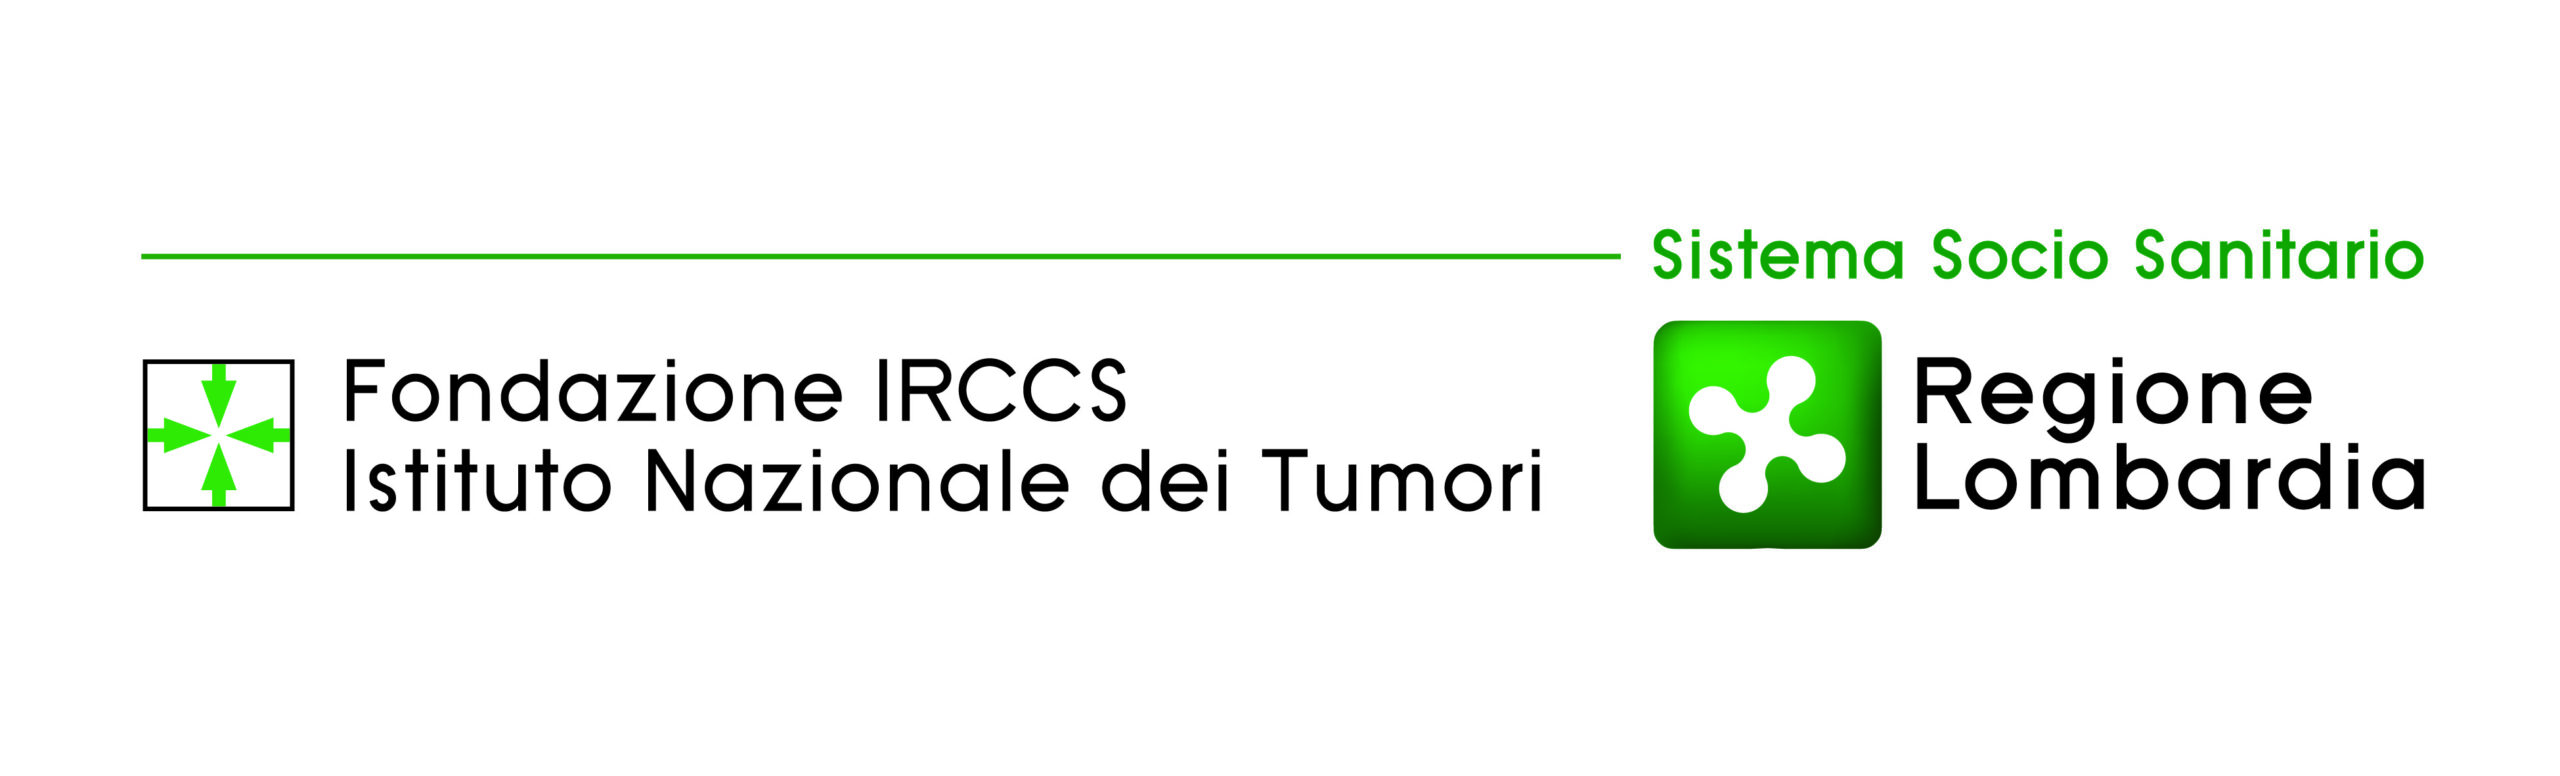 Fondazione IRCCS Istituto Nazionale dei Tumori